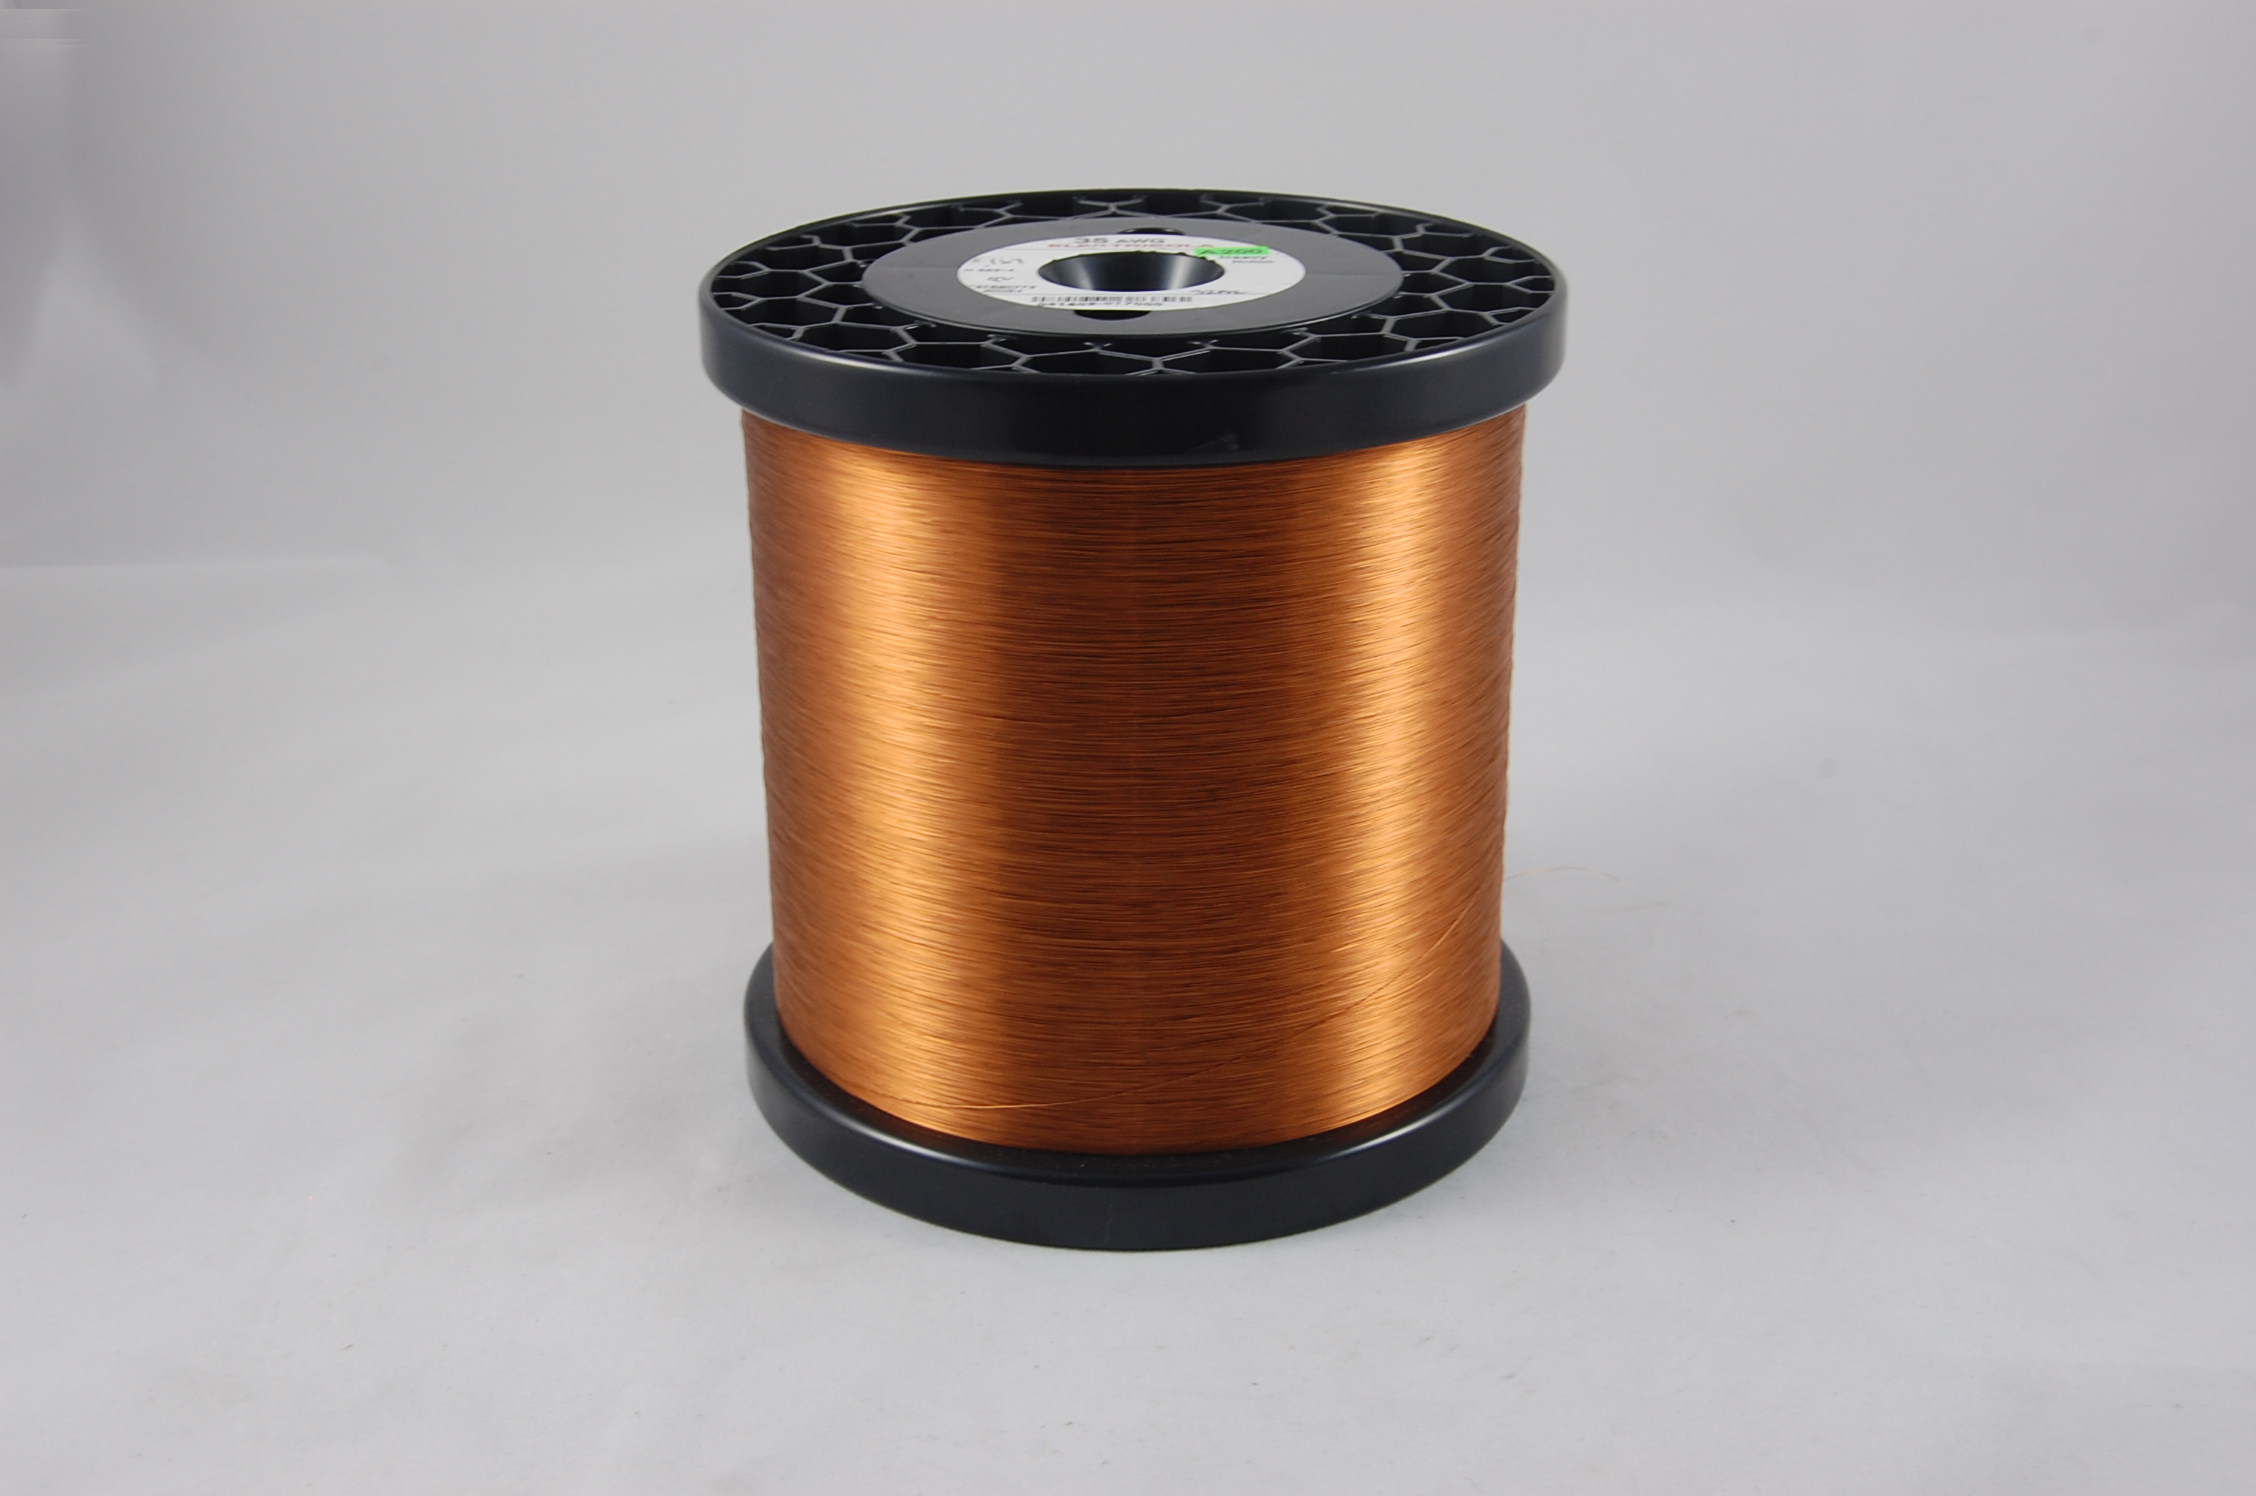 #39 Heavy Amidester 200 Round MW 74 Copper Magnet Wire 200°C, copper,  14 LB 6" x 6" spool (average wght.)